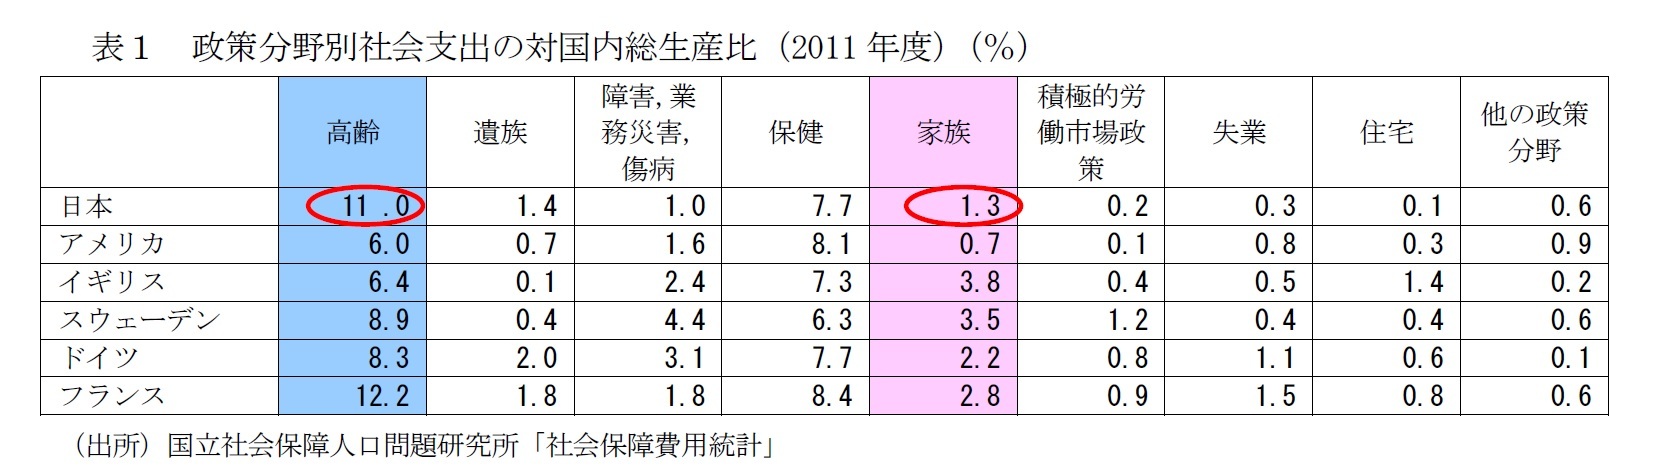 表１　政策分野別社会支出の対国内総生産比（2011年度）（％）